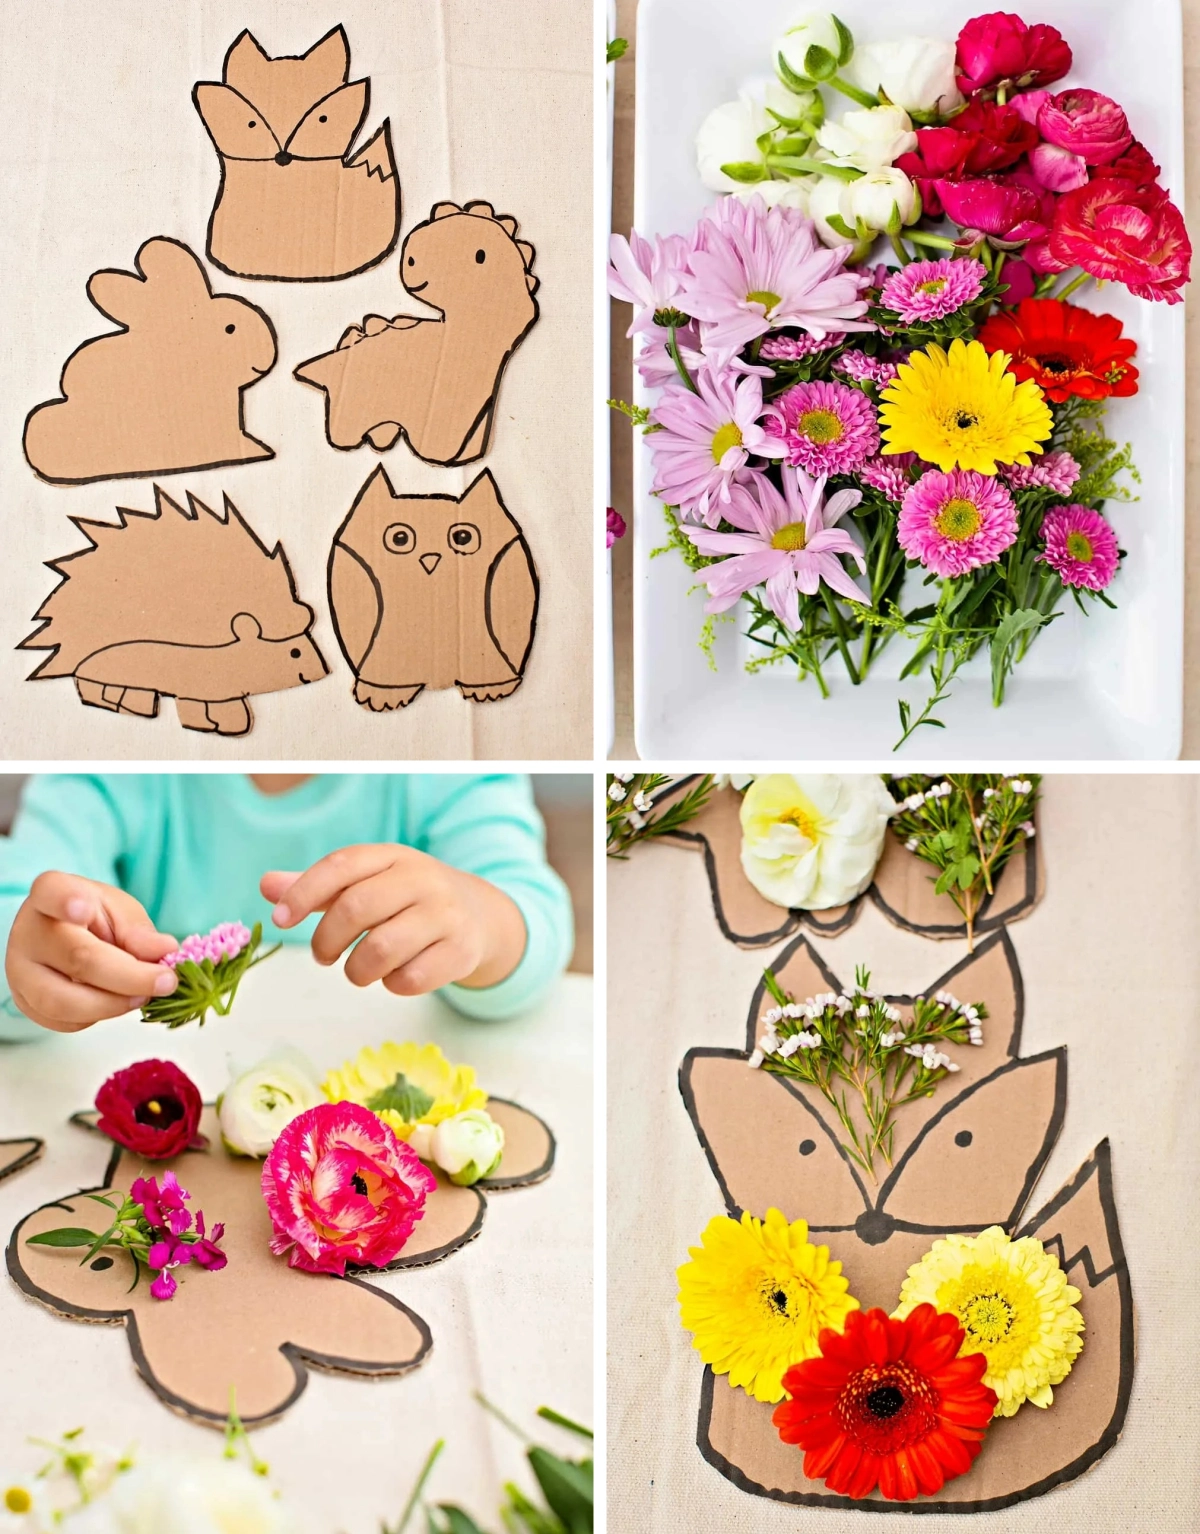 activite manuelle avec du carton figurine animaux decoration fleurs colle